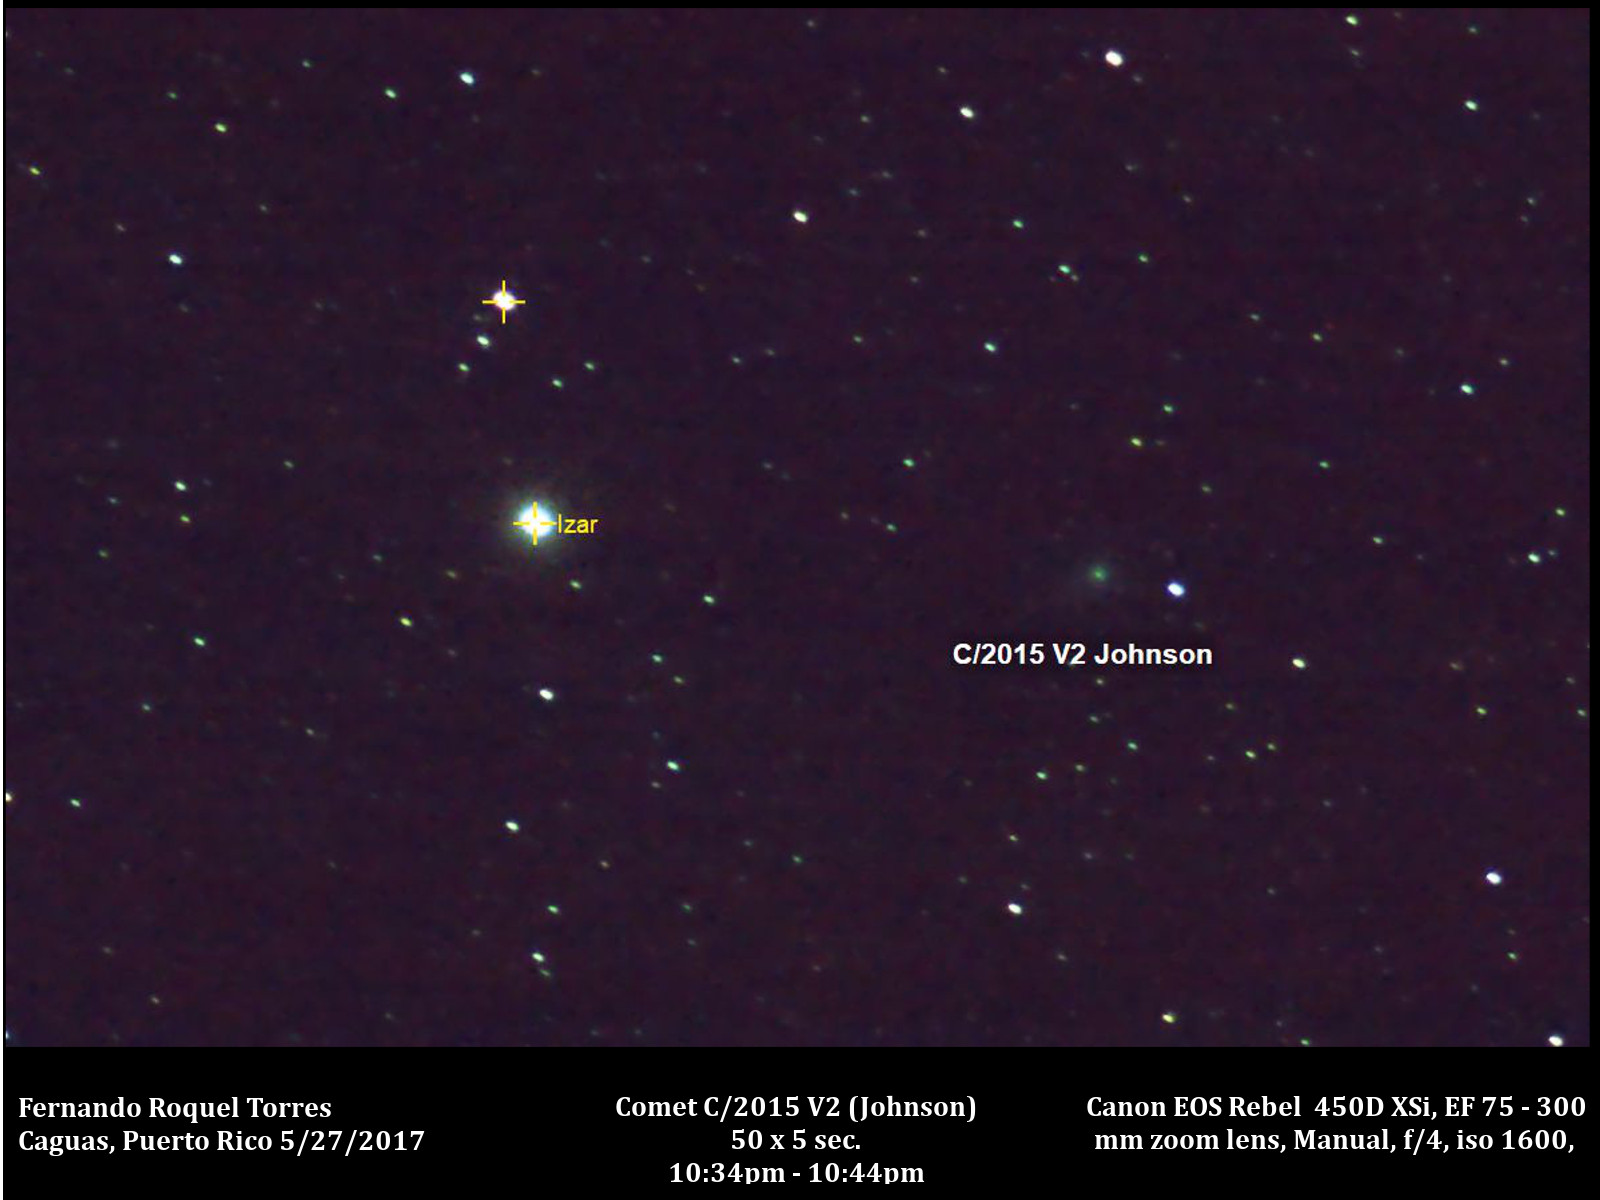 Comet C 2015 V2 Johnson